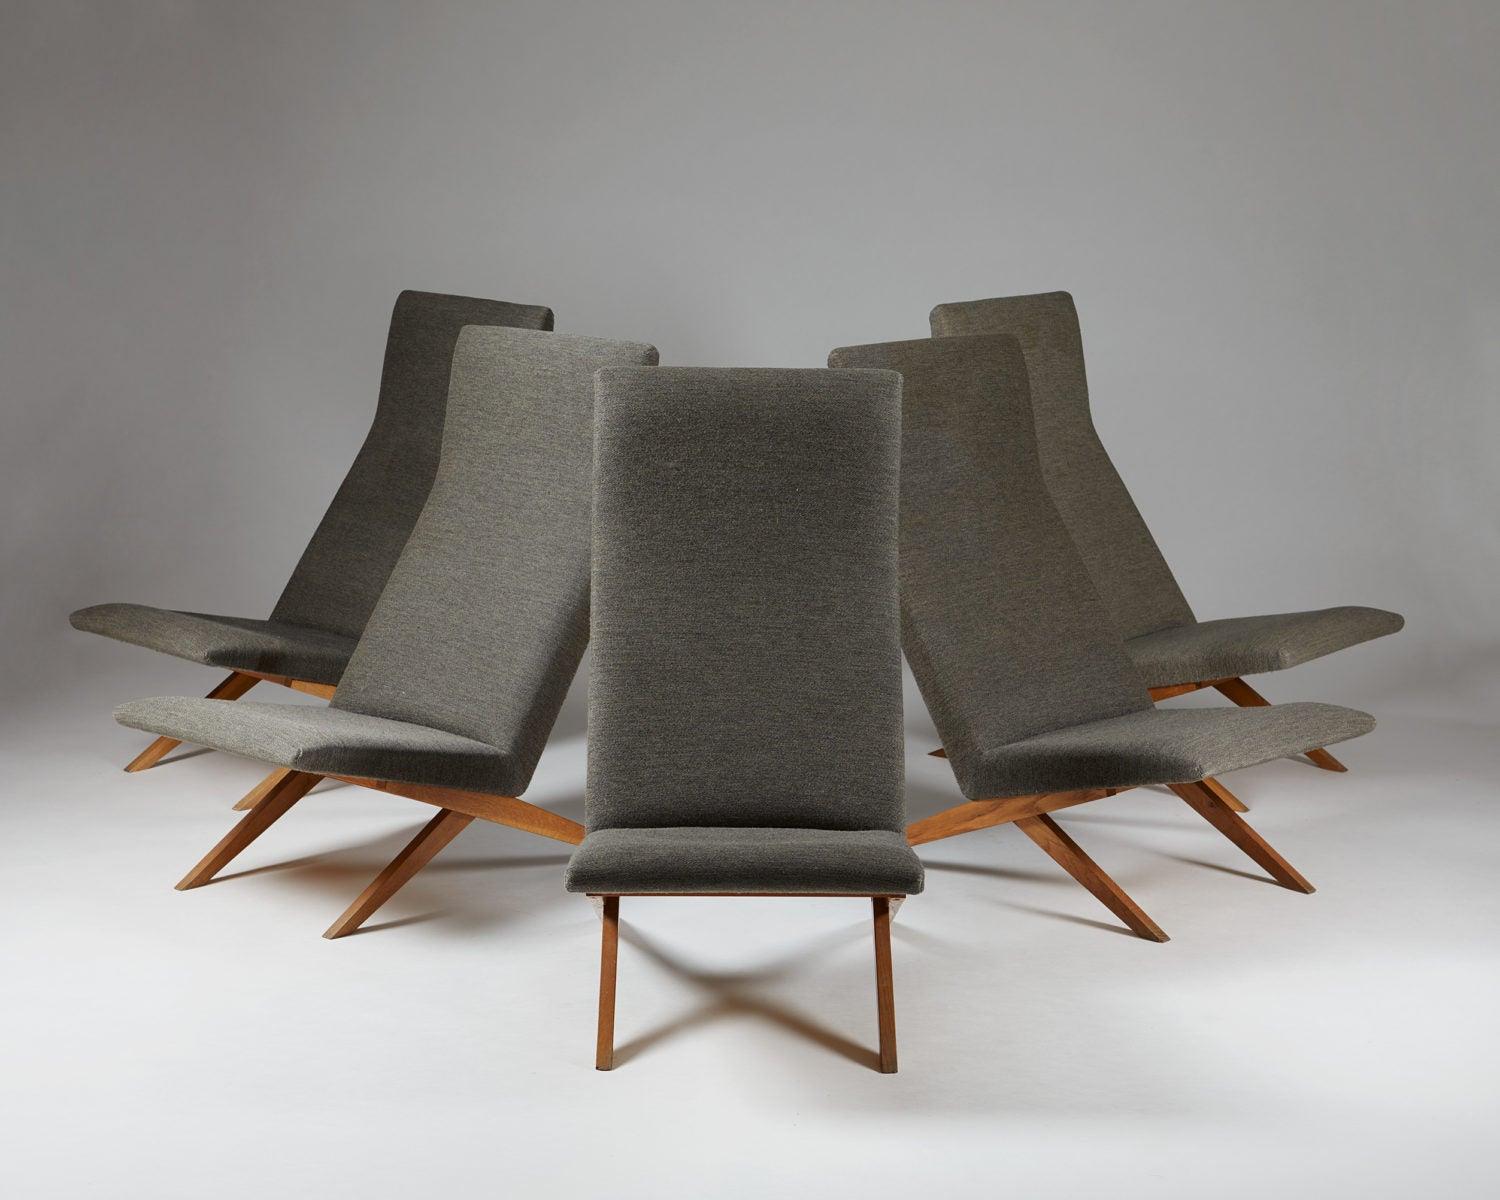 Set aus fünf Sesseln, entworfen von Bodil Kjaer für Harbo Sølvsten,
Dänemark, ca. 1955.

H: 94,5 cm/ 3' 1